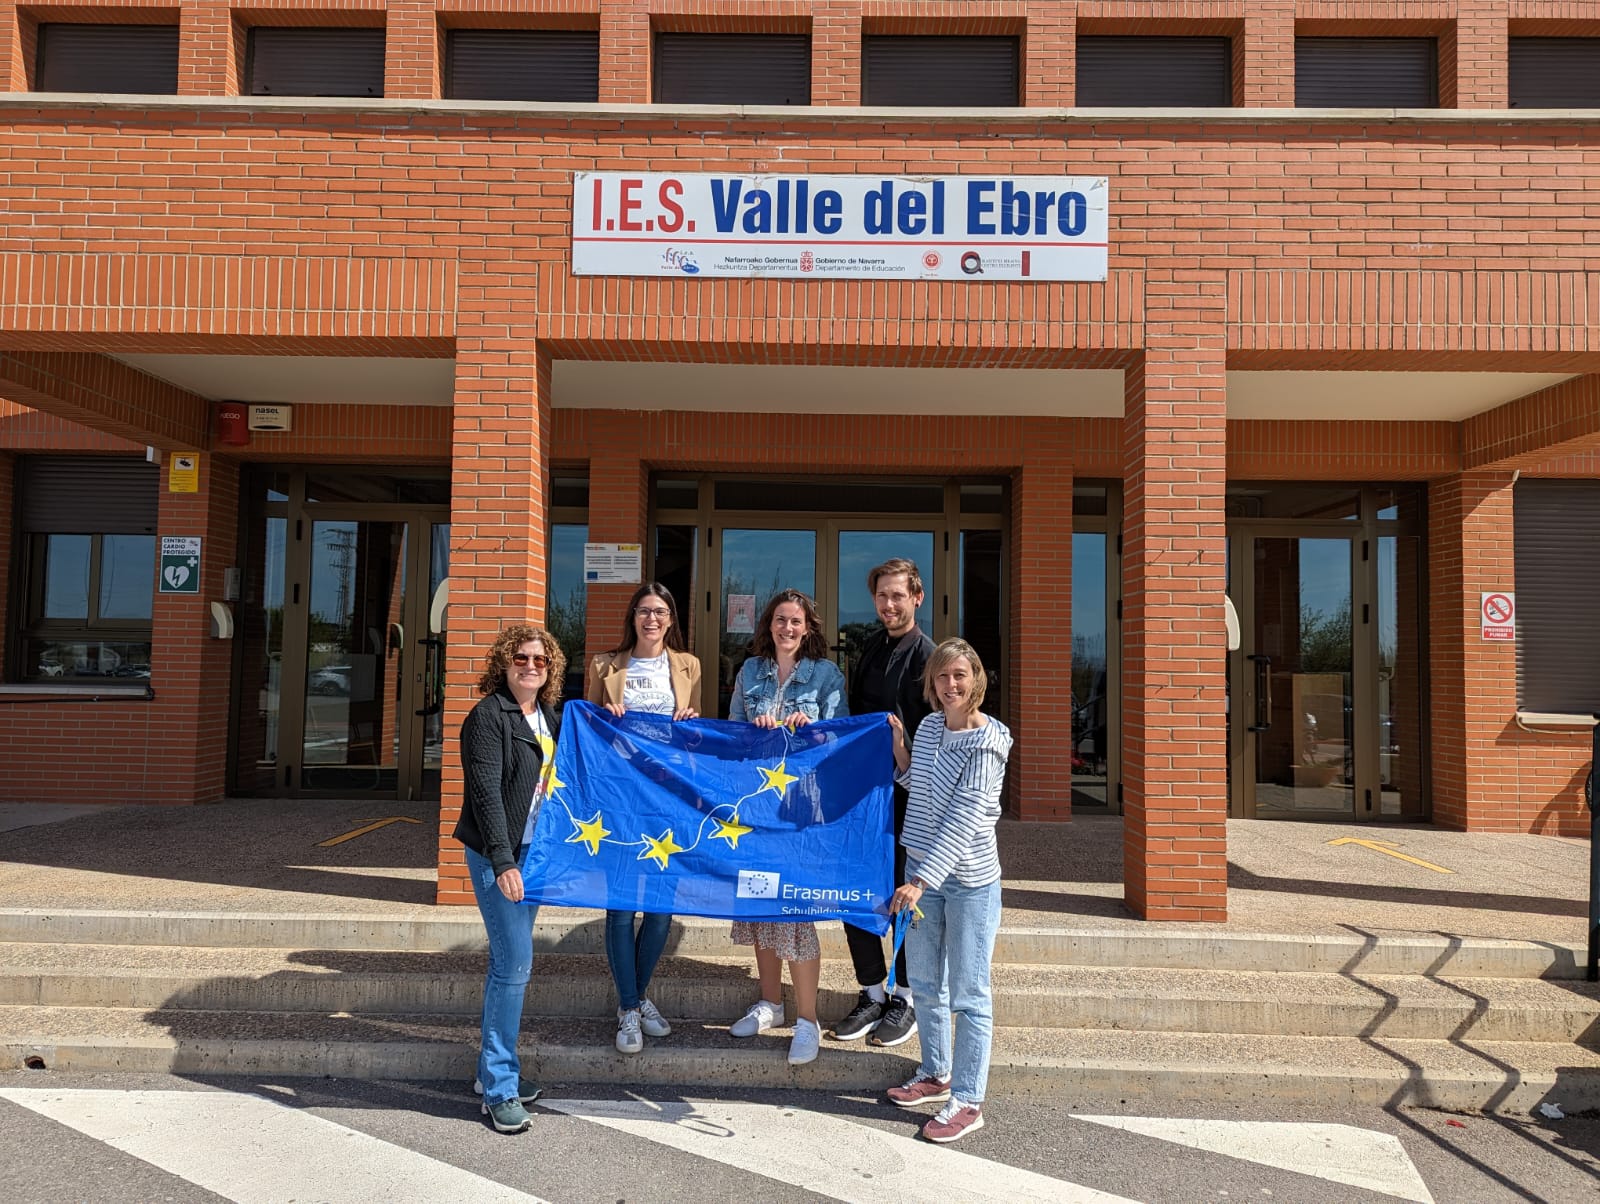 El Instituto Valle del Ebro : Growing Up in Europe